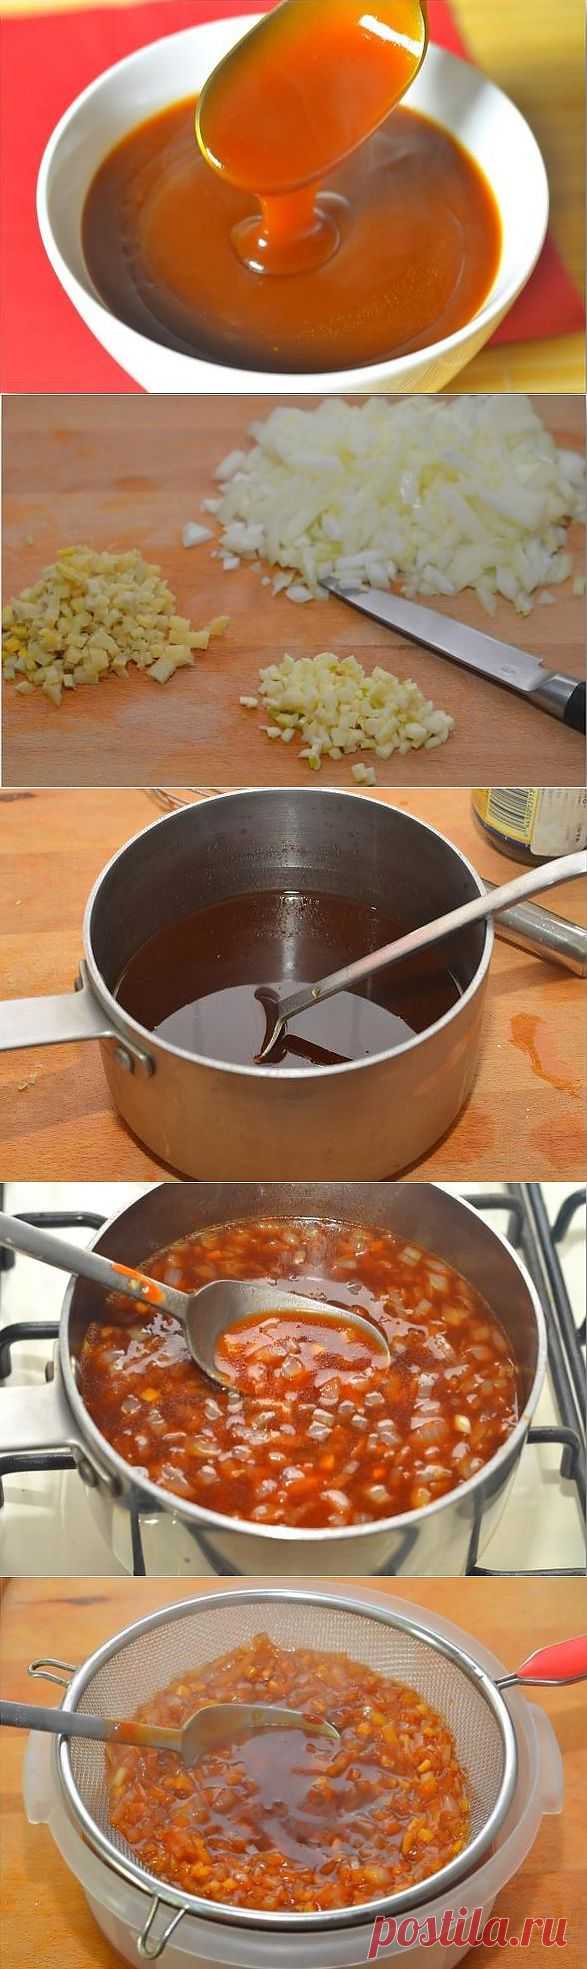 Рецепт Китайский кисло сладкий соус с фото в домашних условиях